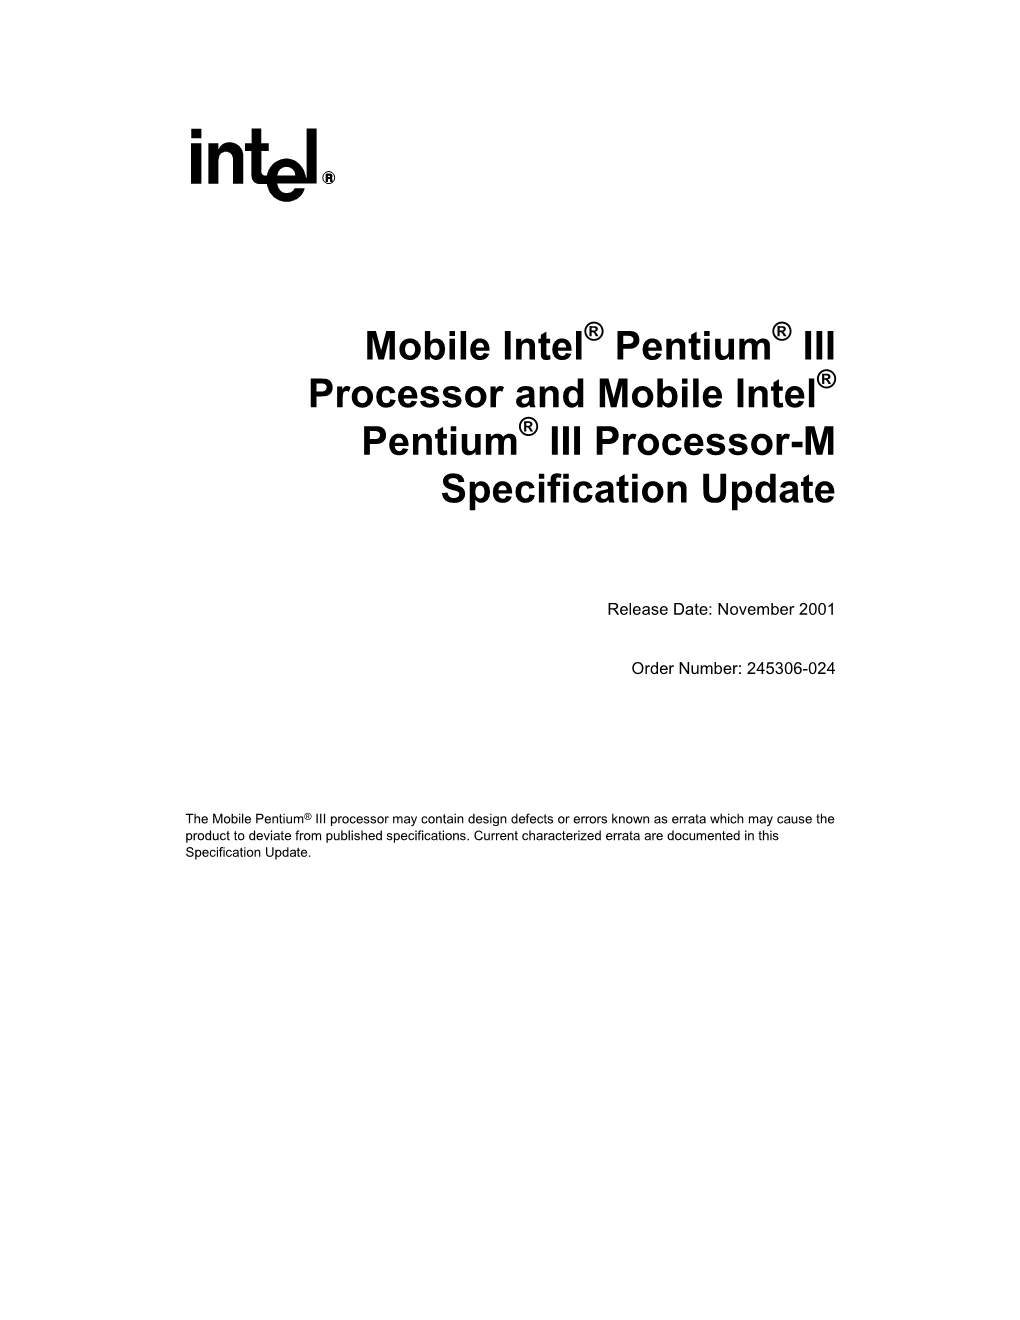 Mobile Pentium® Iii Processor and Mobile Pentium® Iii Processor-M Specification Update